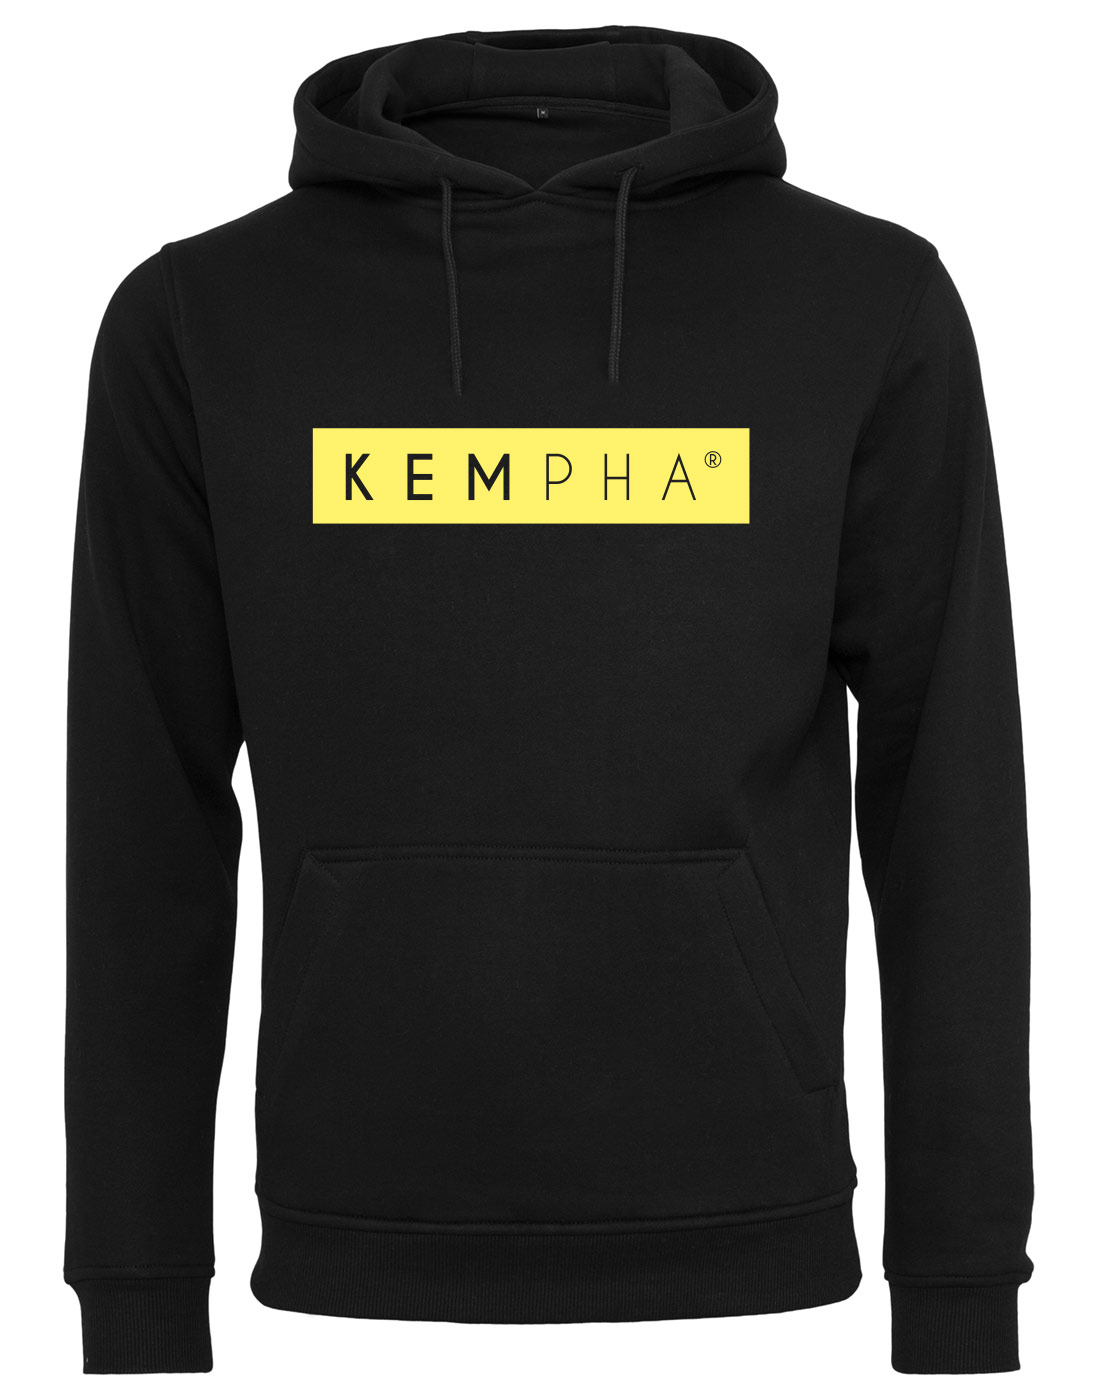 Kempha Premium Hoodie NEONgelb auf schwarz